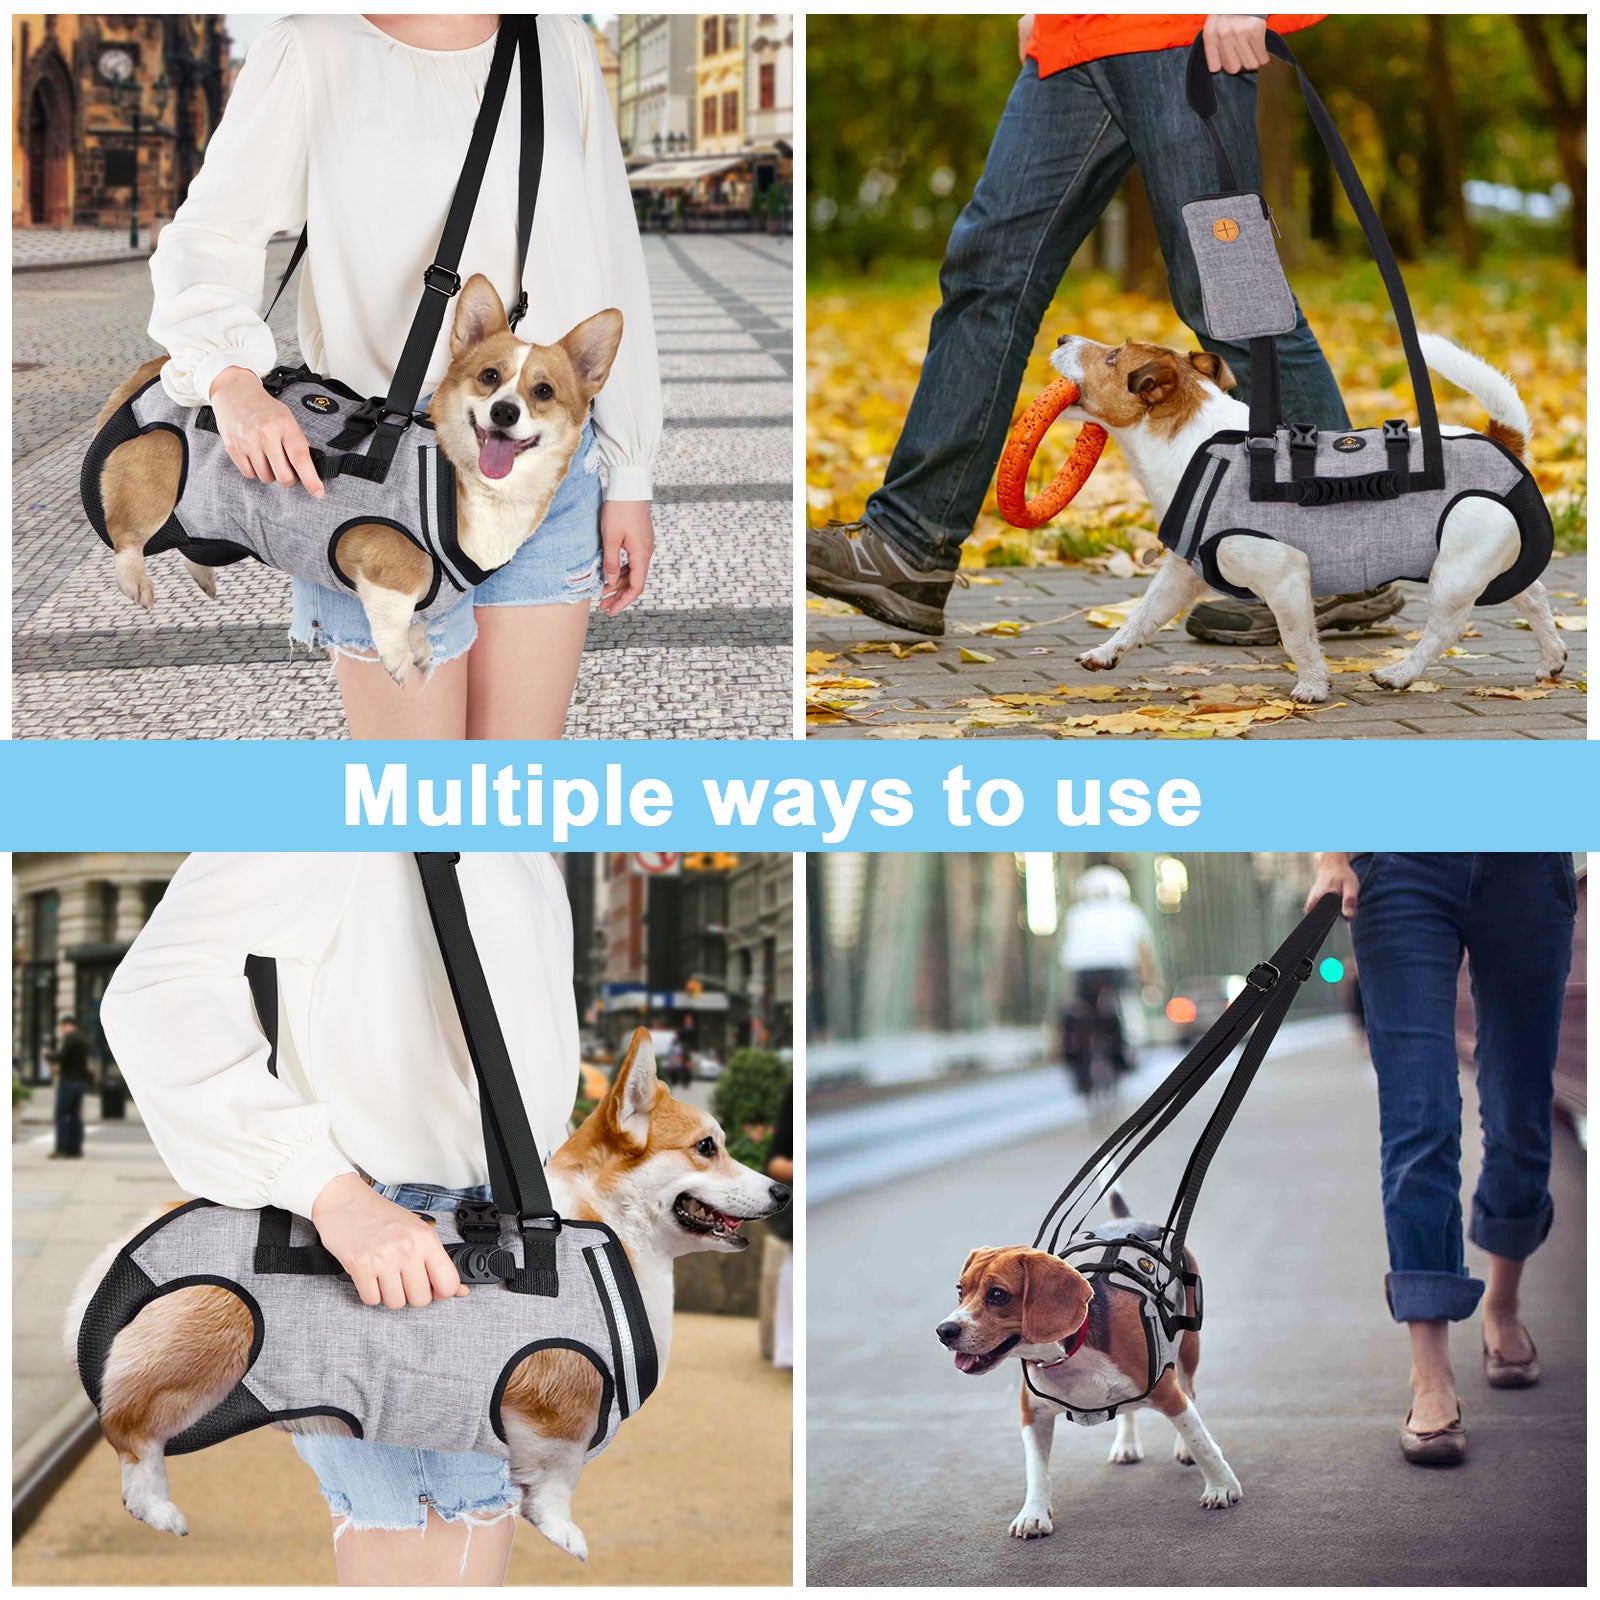 Pet Dog Sling Carrier Harnesses Shoulder Bag Support Lift Whole Body Vest  Travel